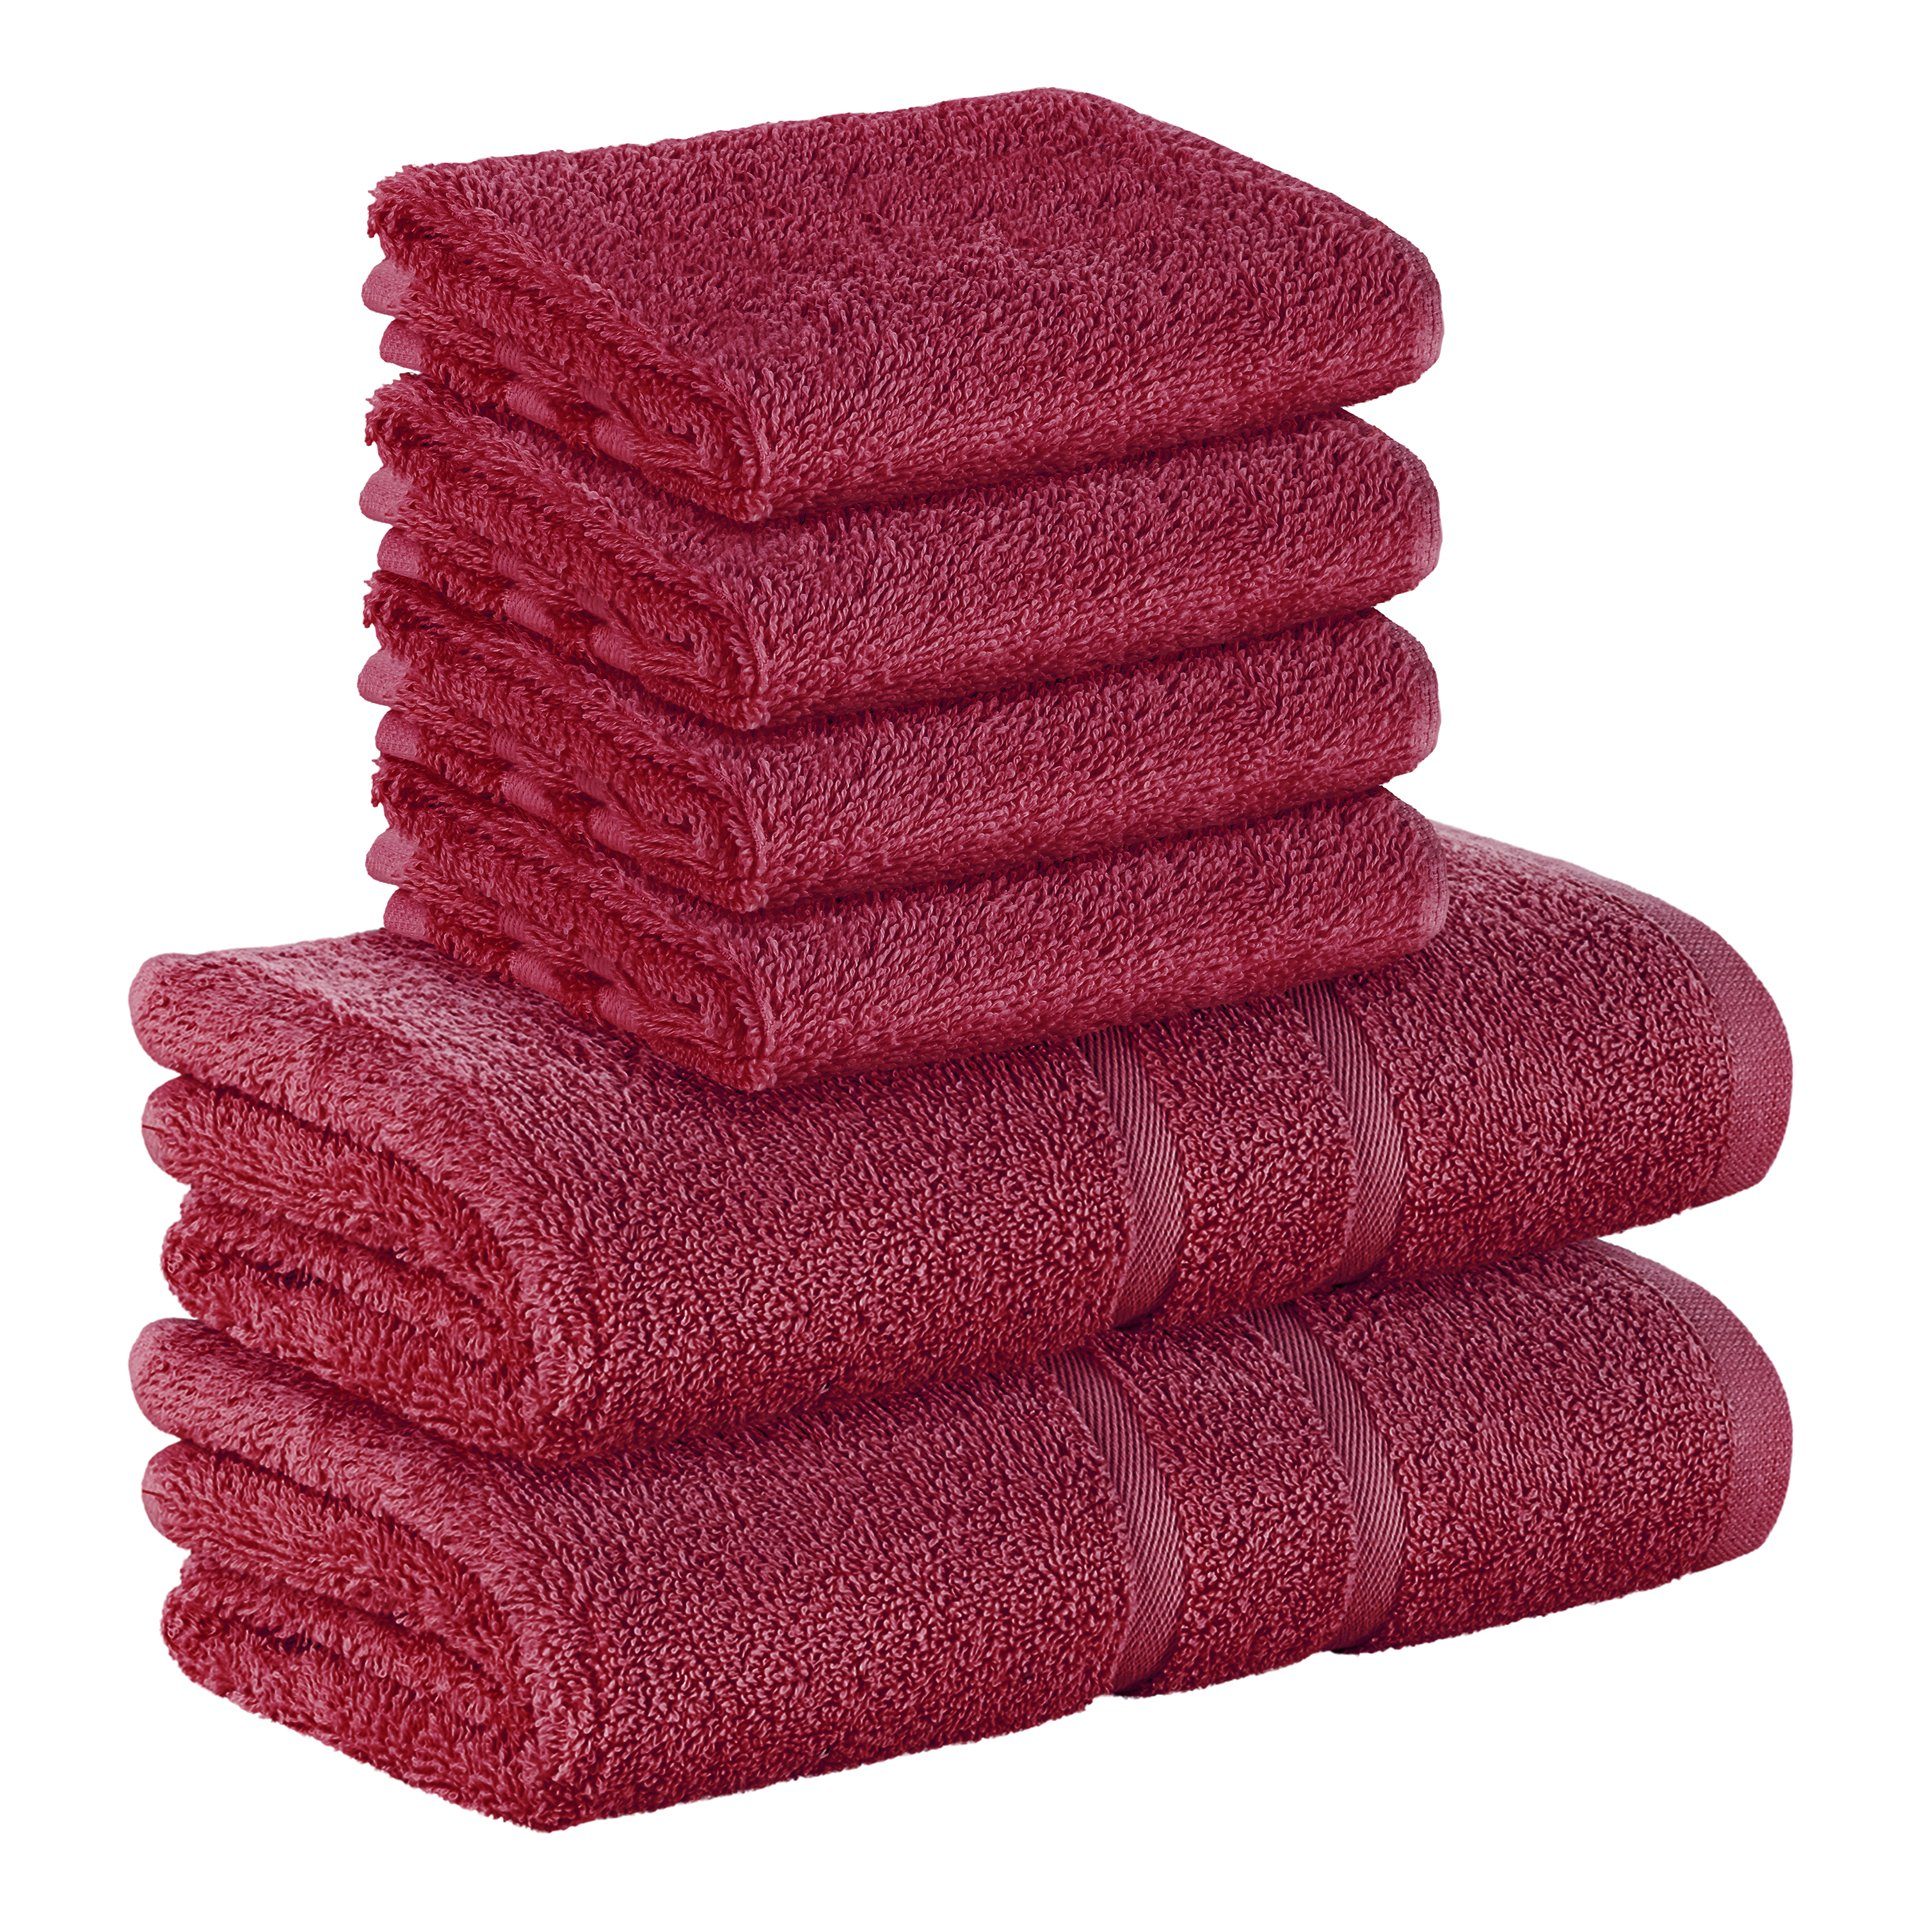 StickandShine Handtuch Set 4x Gästehandtuch 2x Handtücher als SET in verschiedenen Farben (6 Teilig) 100% Baumwolle 500 GSM Frottee 6er Handtuch Pack, (Sparset), 100% Baumwolle 500 GSM Bordeaux